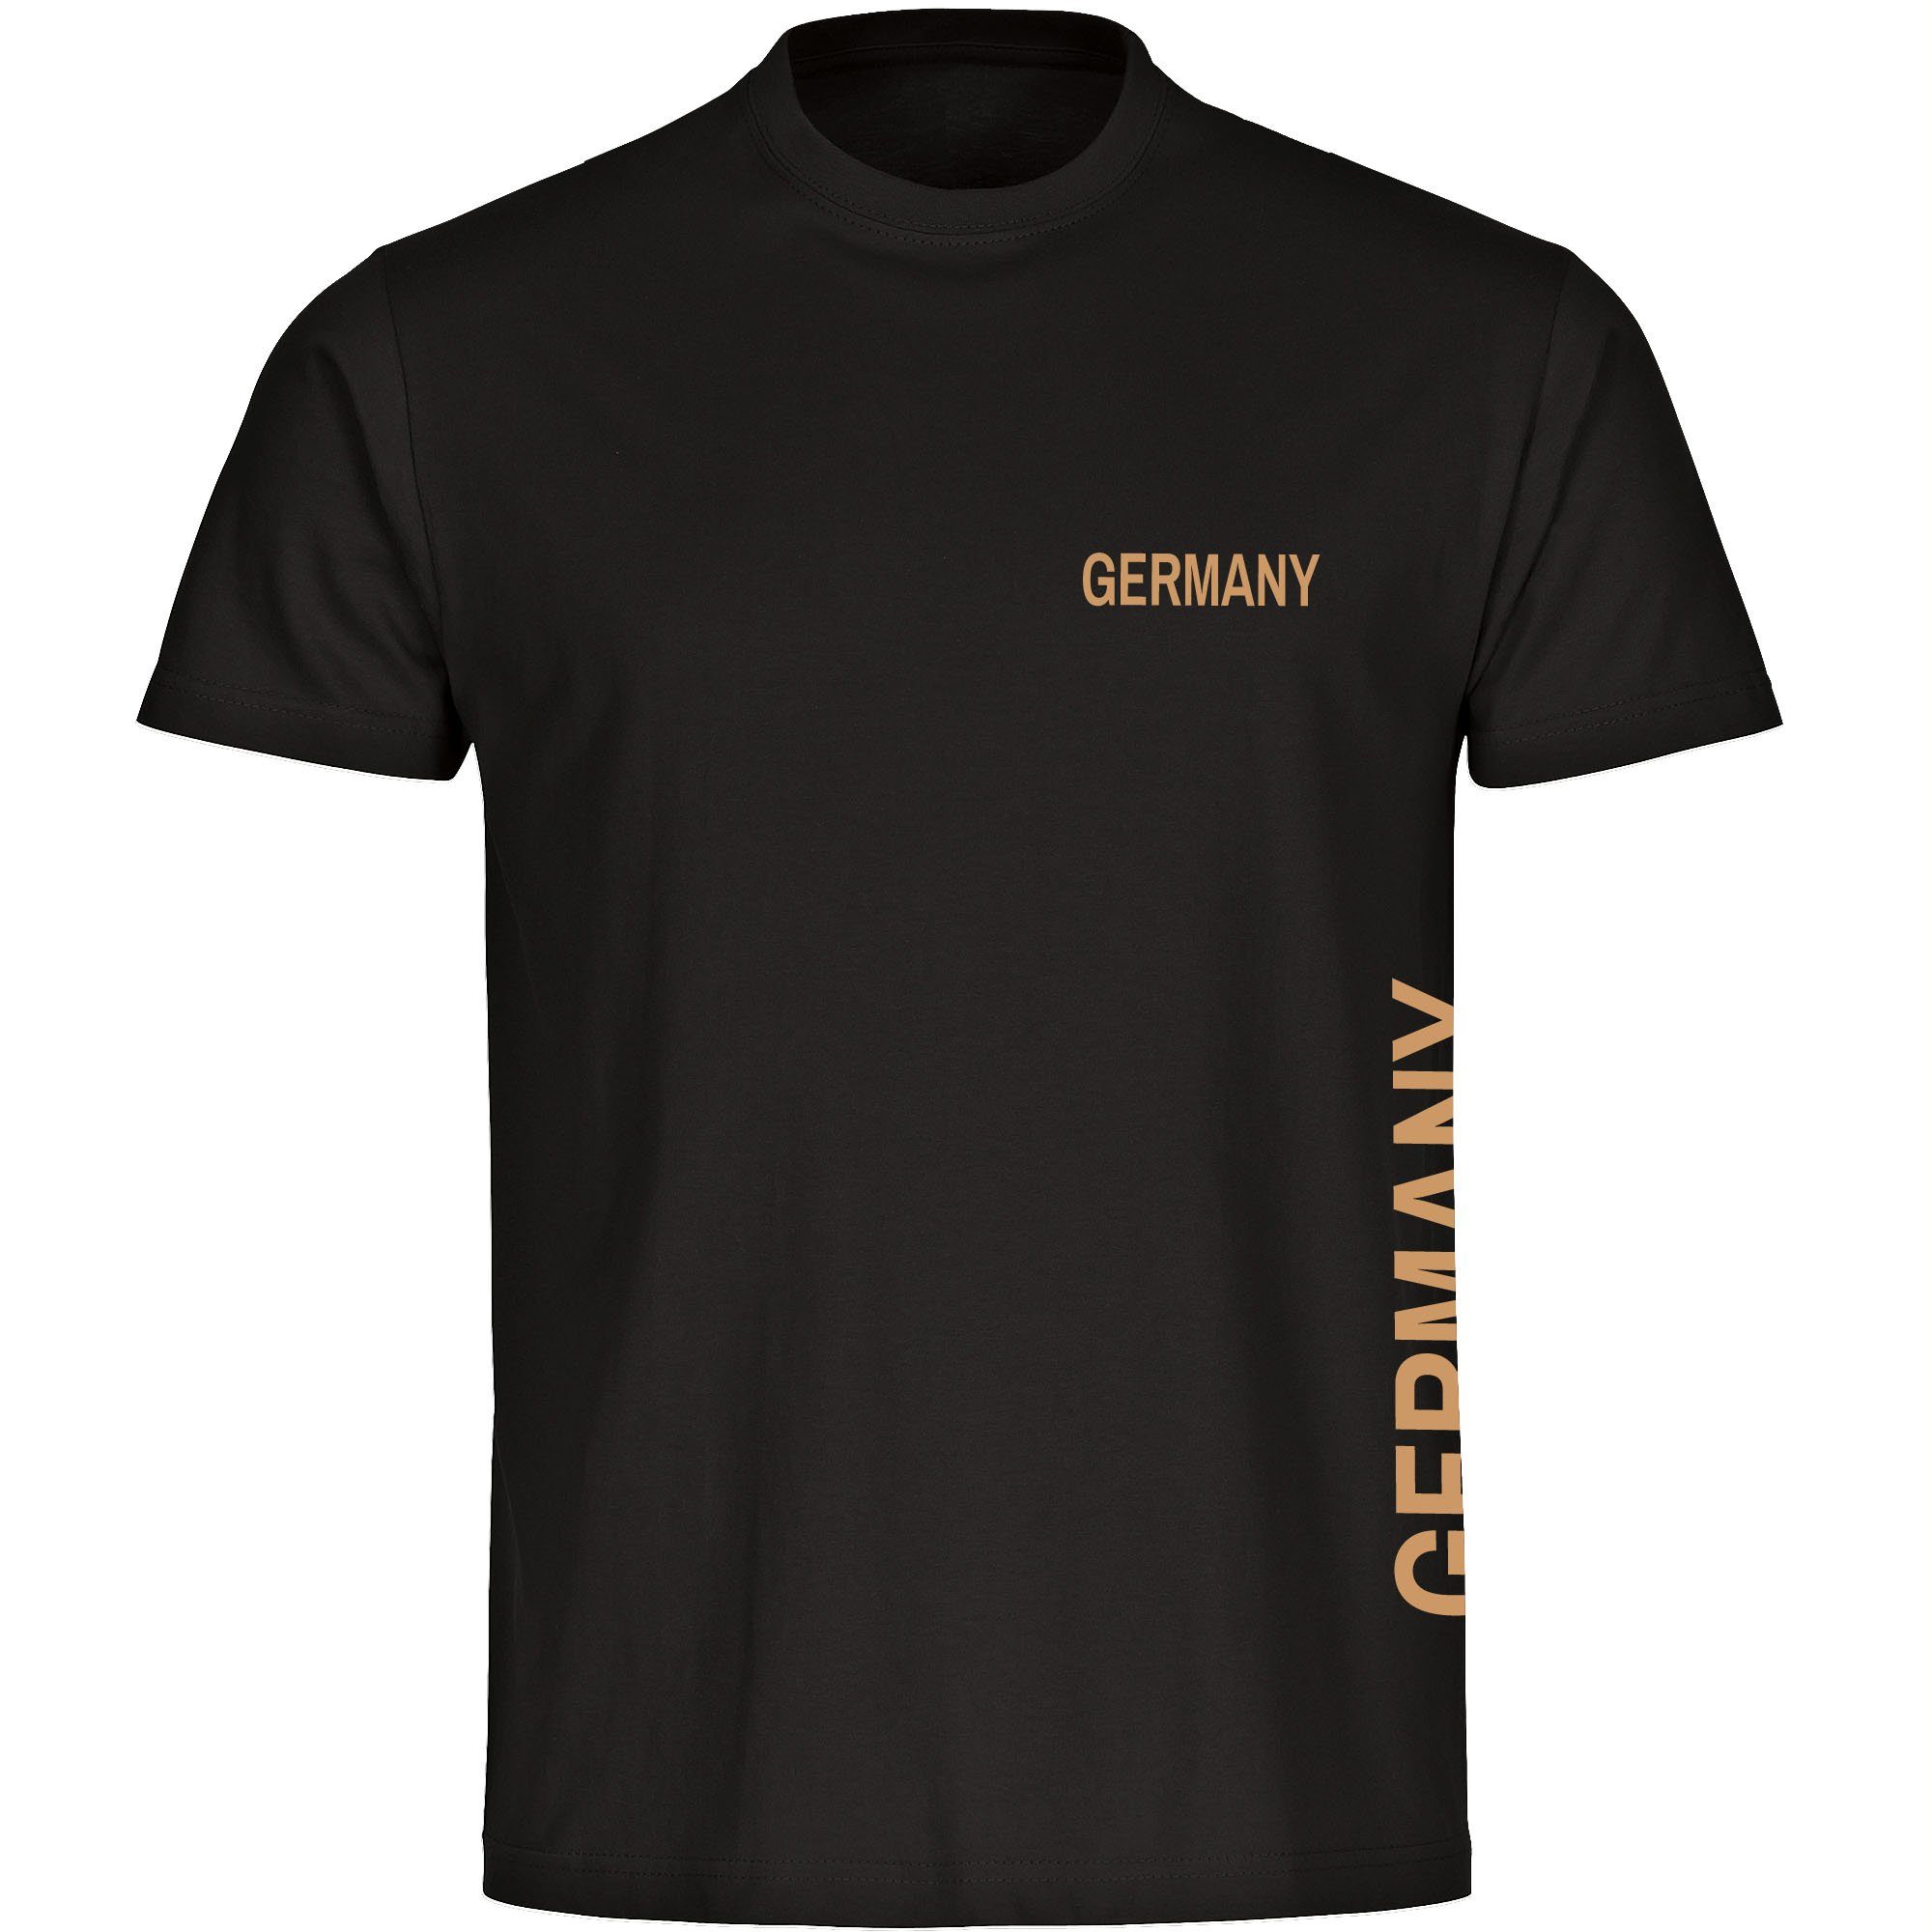 multifanshop T-Shirt Kinder Germany - Brust & Seite Gold - Boy Girl